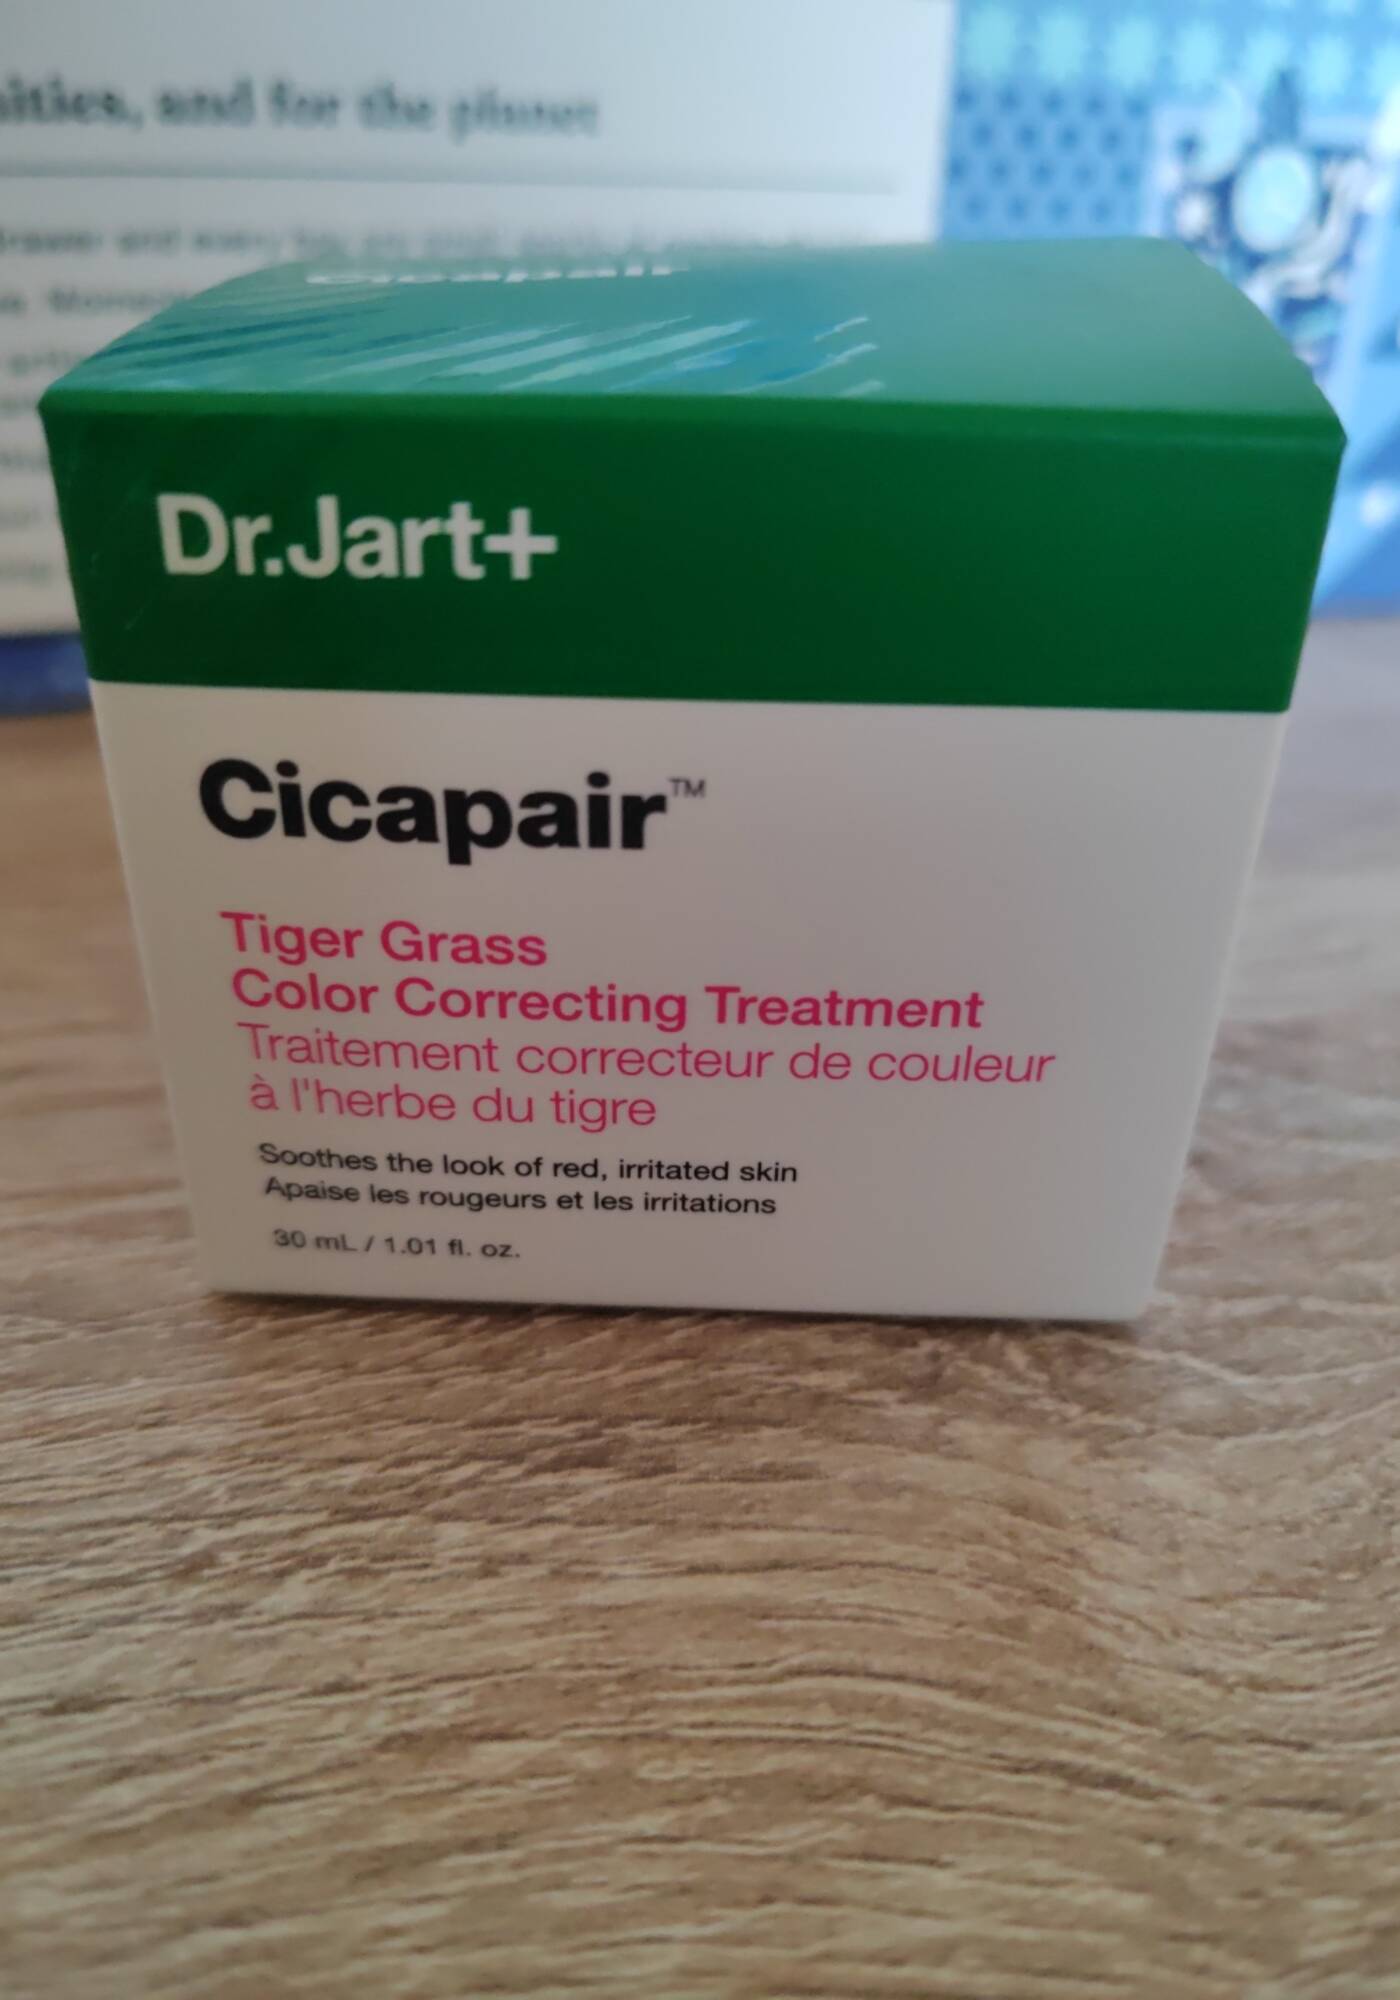 DR.JART+ - Cicapair - Traitement correcteur de couleur